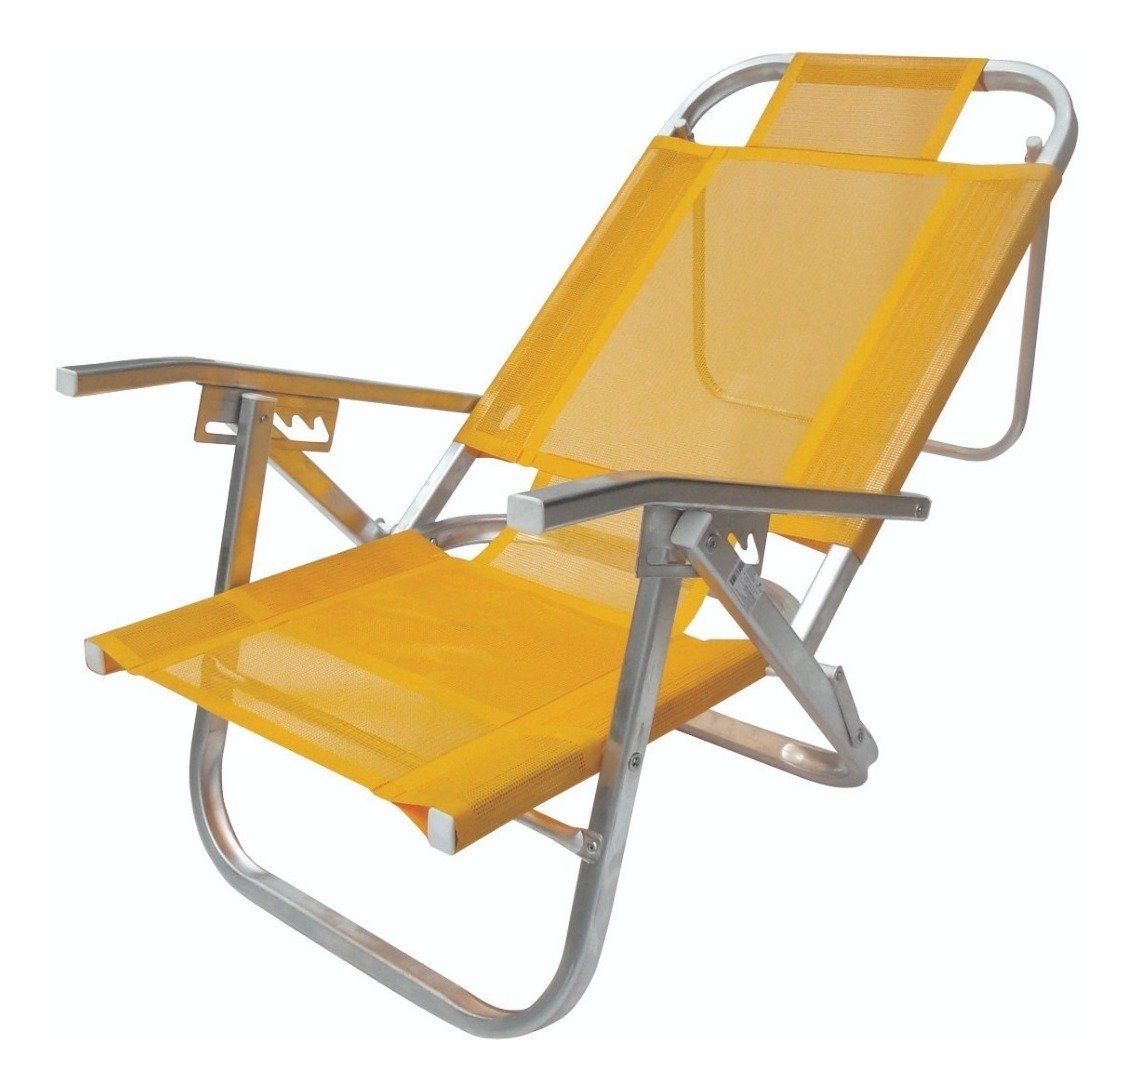 Silla repostera de playa reclinable de aluminio Lounger - RIO